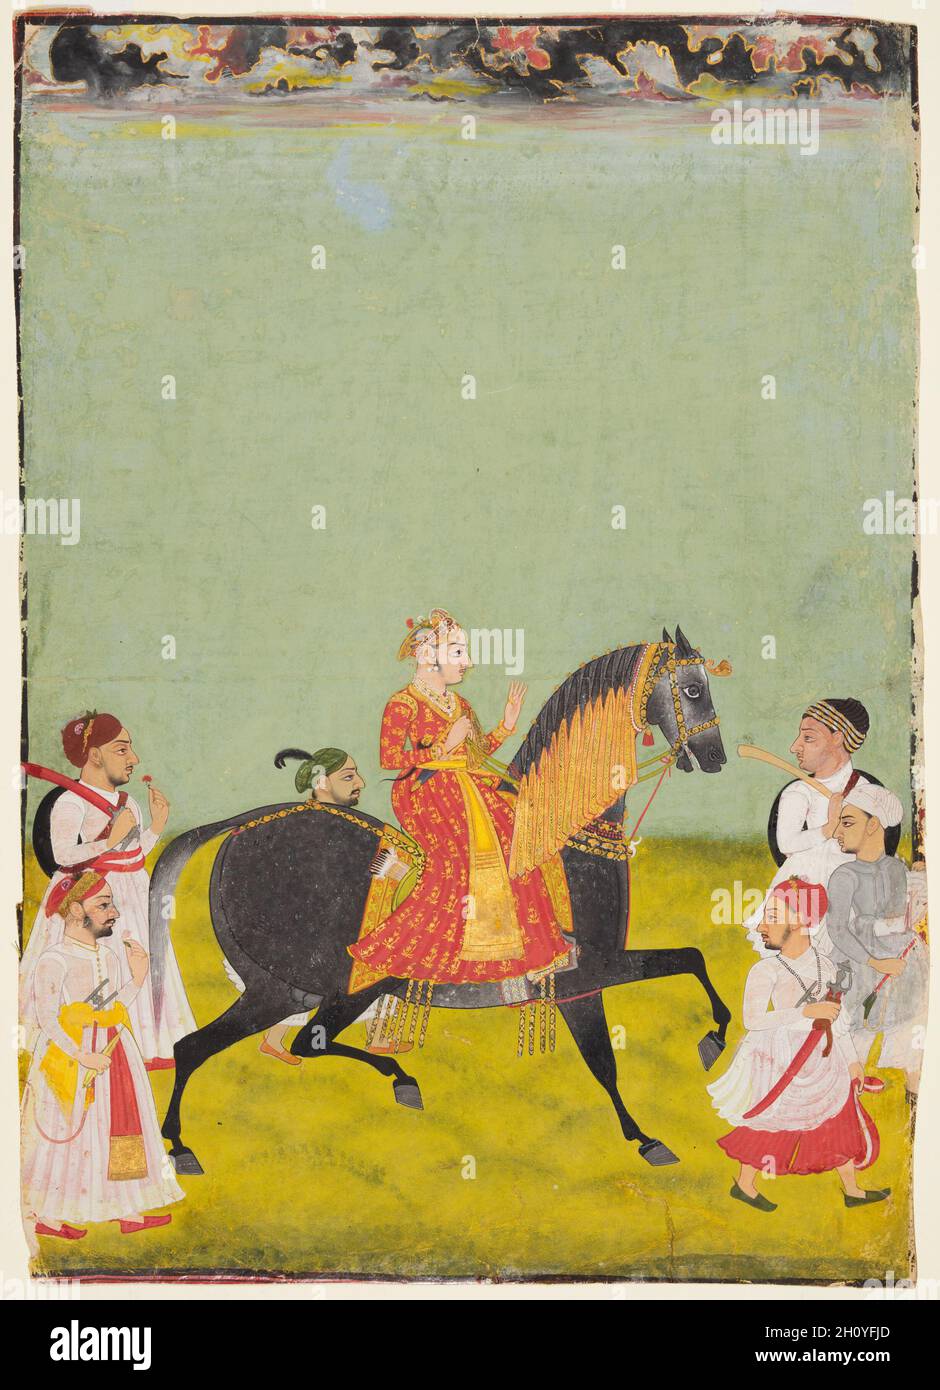 Reiten Porträt von Maharana Raj Singh II von Mewar (r. 1755–62), c. 1760. Nordwestindien, Rajasthan, Rajput Königreich Mewar. Gummitemperatur und Gold auf Papier; 40 x 28 cm (15 3/4 x 11 Zoll). Der junge König war nur elf Jahre alt, als er den Thron von seinem Vater Pratap Singh II (r. 1752–55). Hier zeigt sich, dass kaum die Anfänge der Gesichtsbehaarung zu wachsen beginnen, er trägt einen wunderschönen Turban mit frischen Blumen, die in das bejeweled Band eingesteckt sind, und einen Löwenkopf-Dolch in seinem Gürtel. Bunte Wolken sammeln sich verzeihend am Himmel und versprechen Regen, während der schwarze Hengst trabt Stockfoto